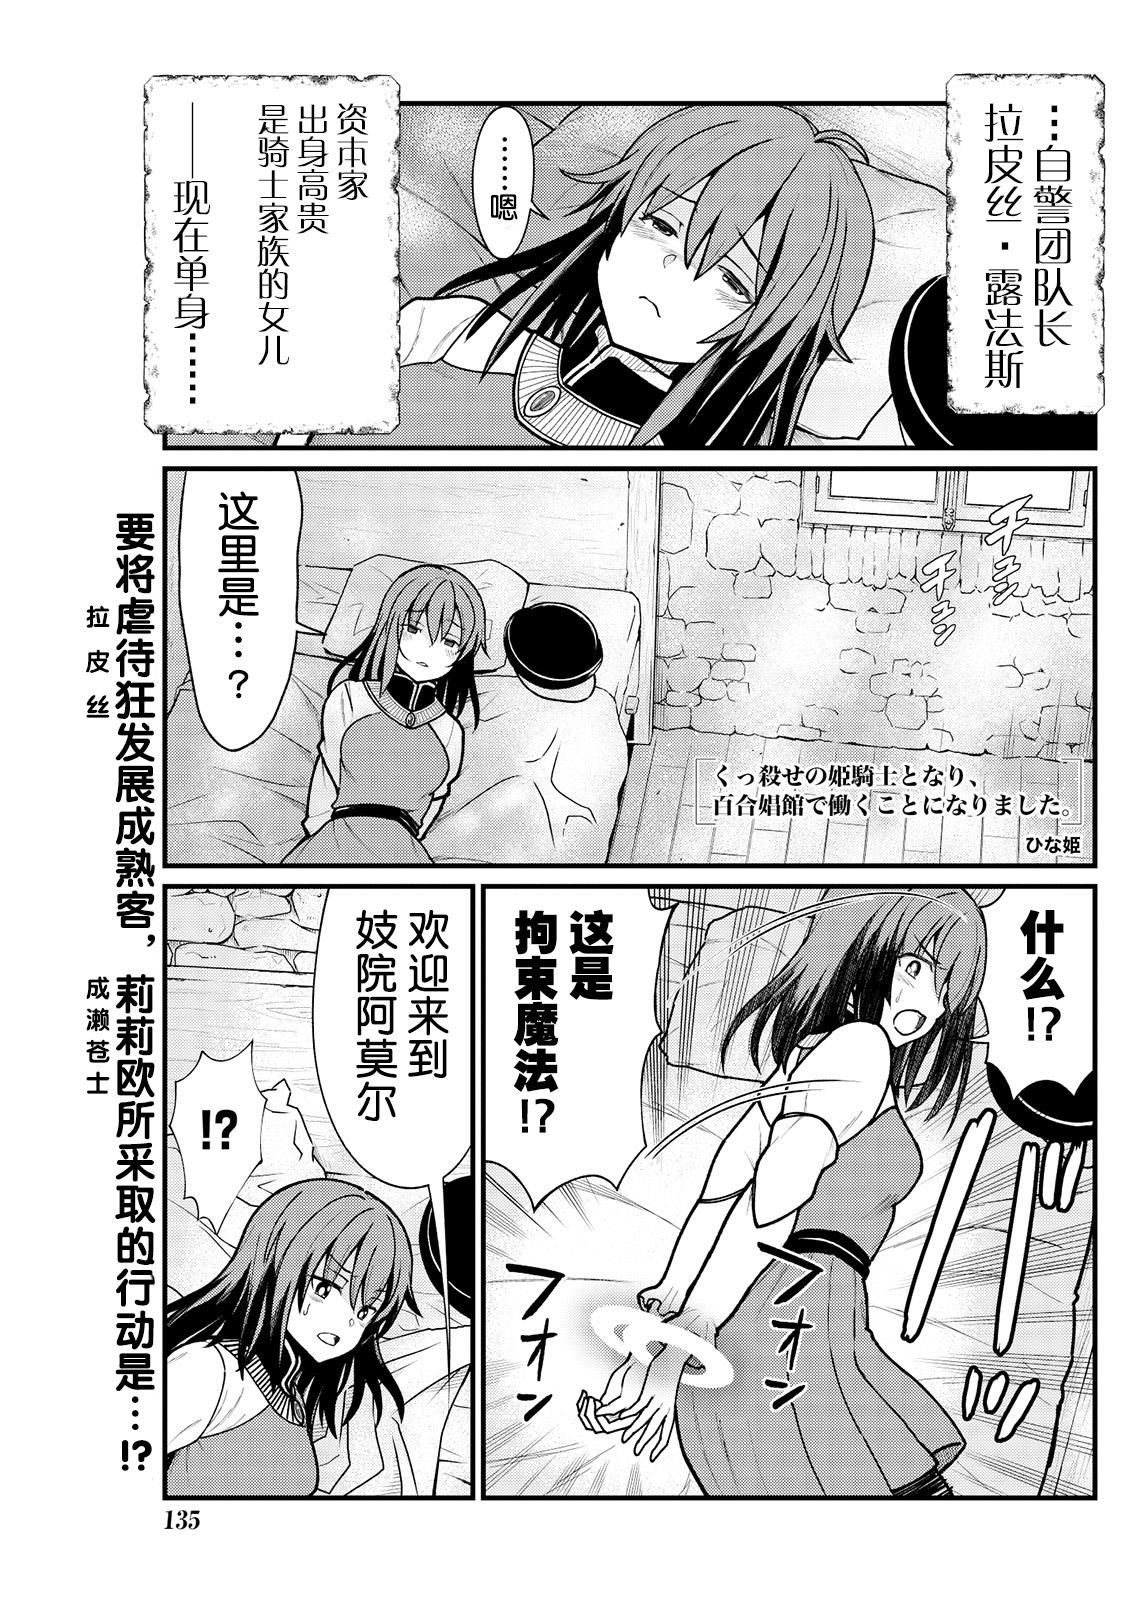 Topless Kukkorose no Himekishi to nari, Yuri Shoukan de Hataraku koto ni Narimashita. 5 No Condom - Page 3